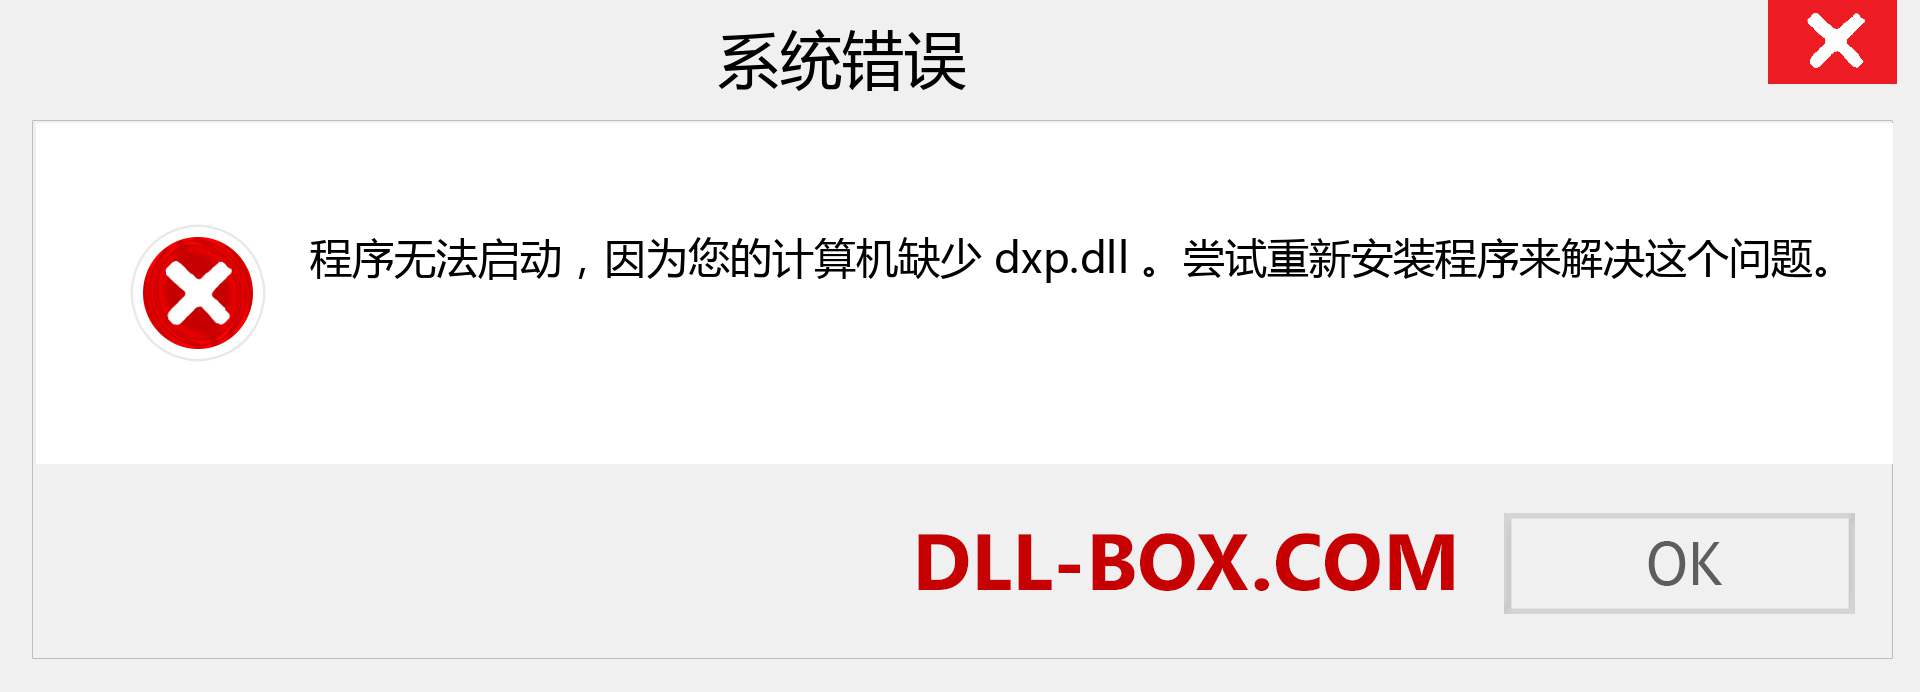 dxp.dll 文件丢失？。 适用于 Windows 7、8、10 的下载 - 修复 Windows、照片、图像上的 dxp dll 丢失错误